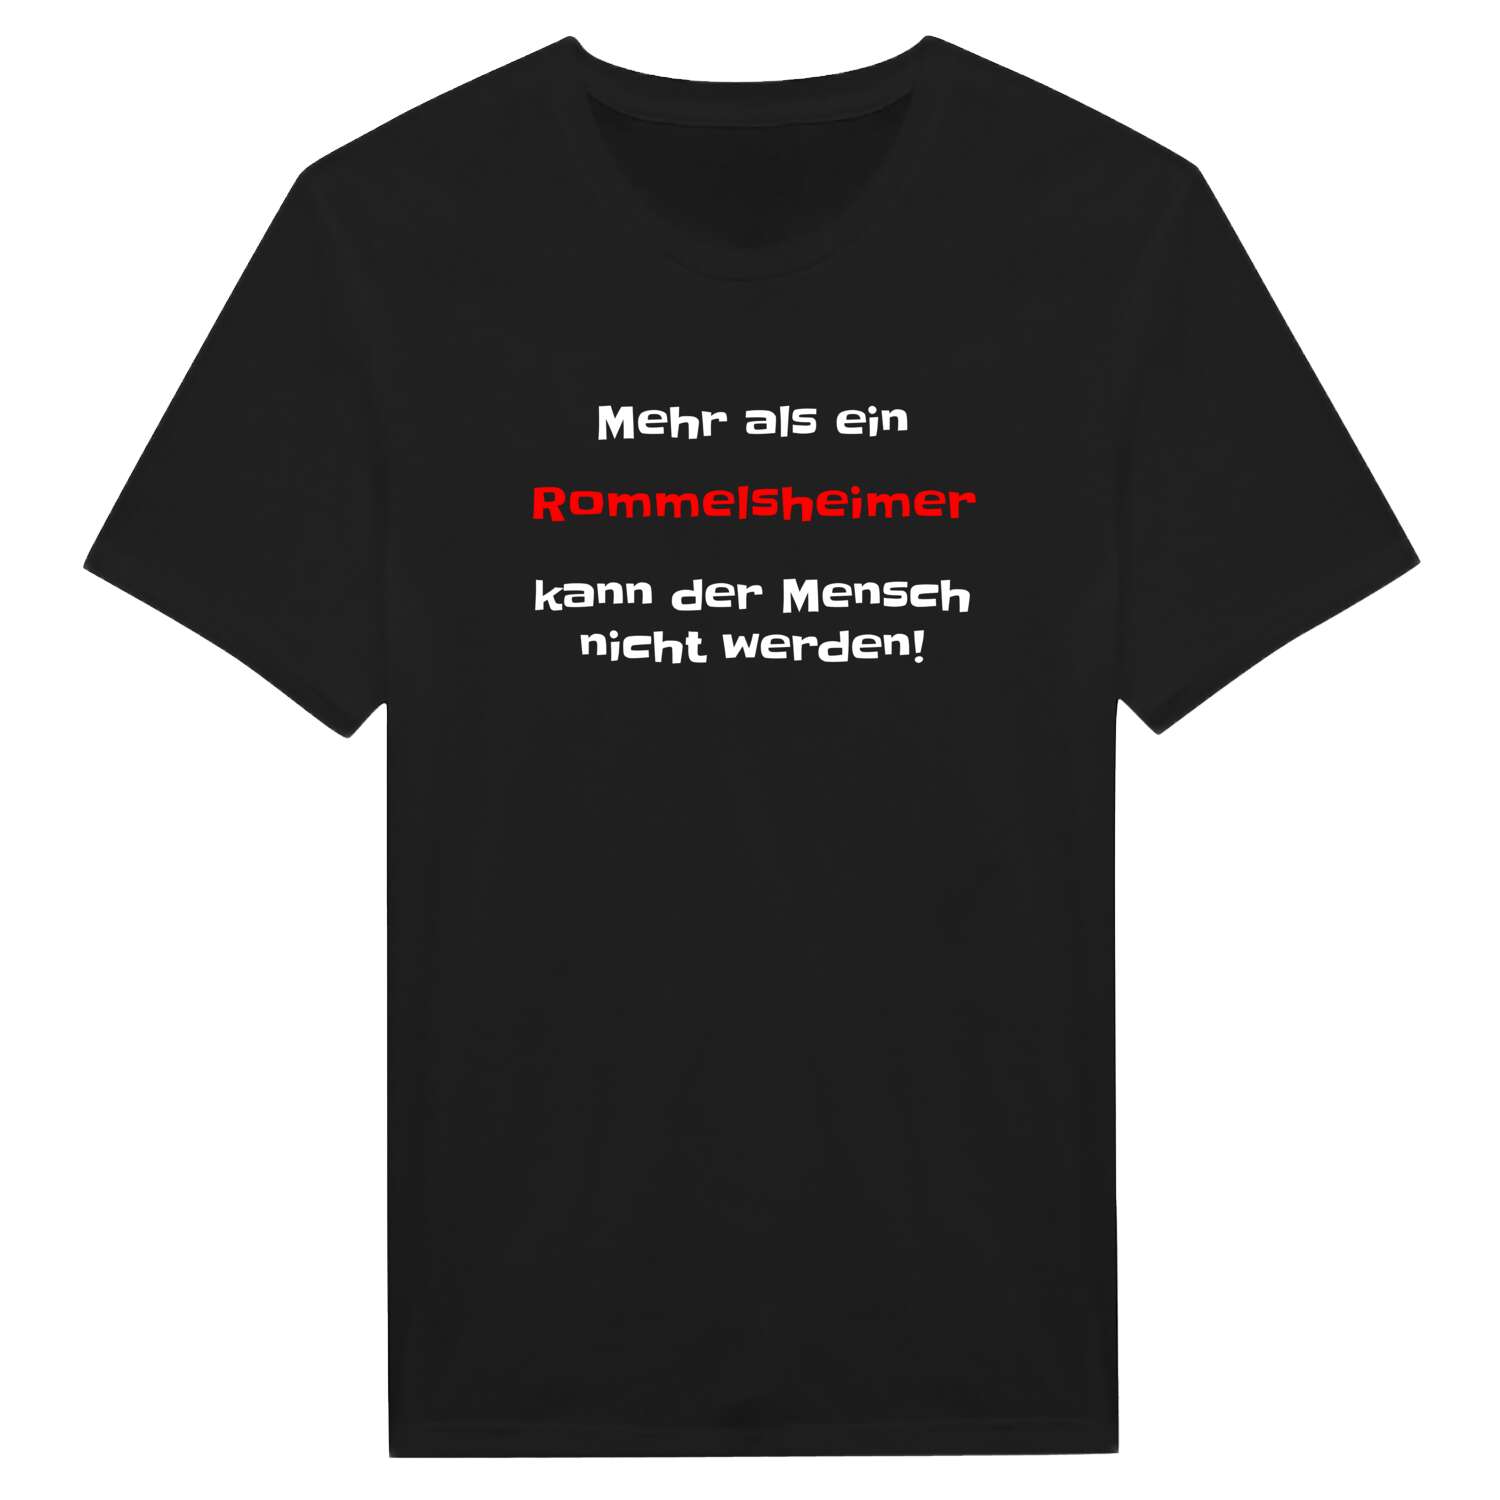 Rommelsheim T-Shirt »Mehr als ein«